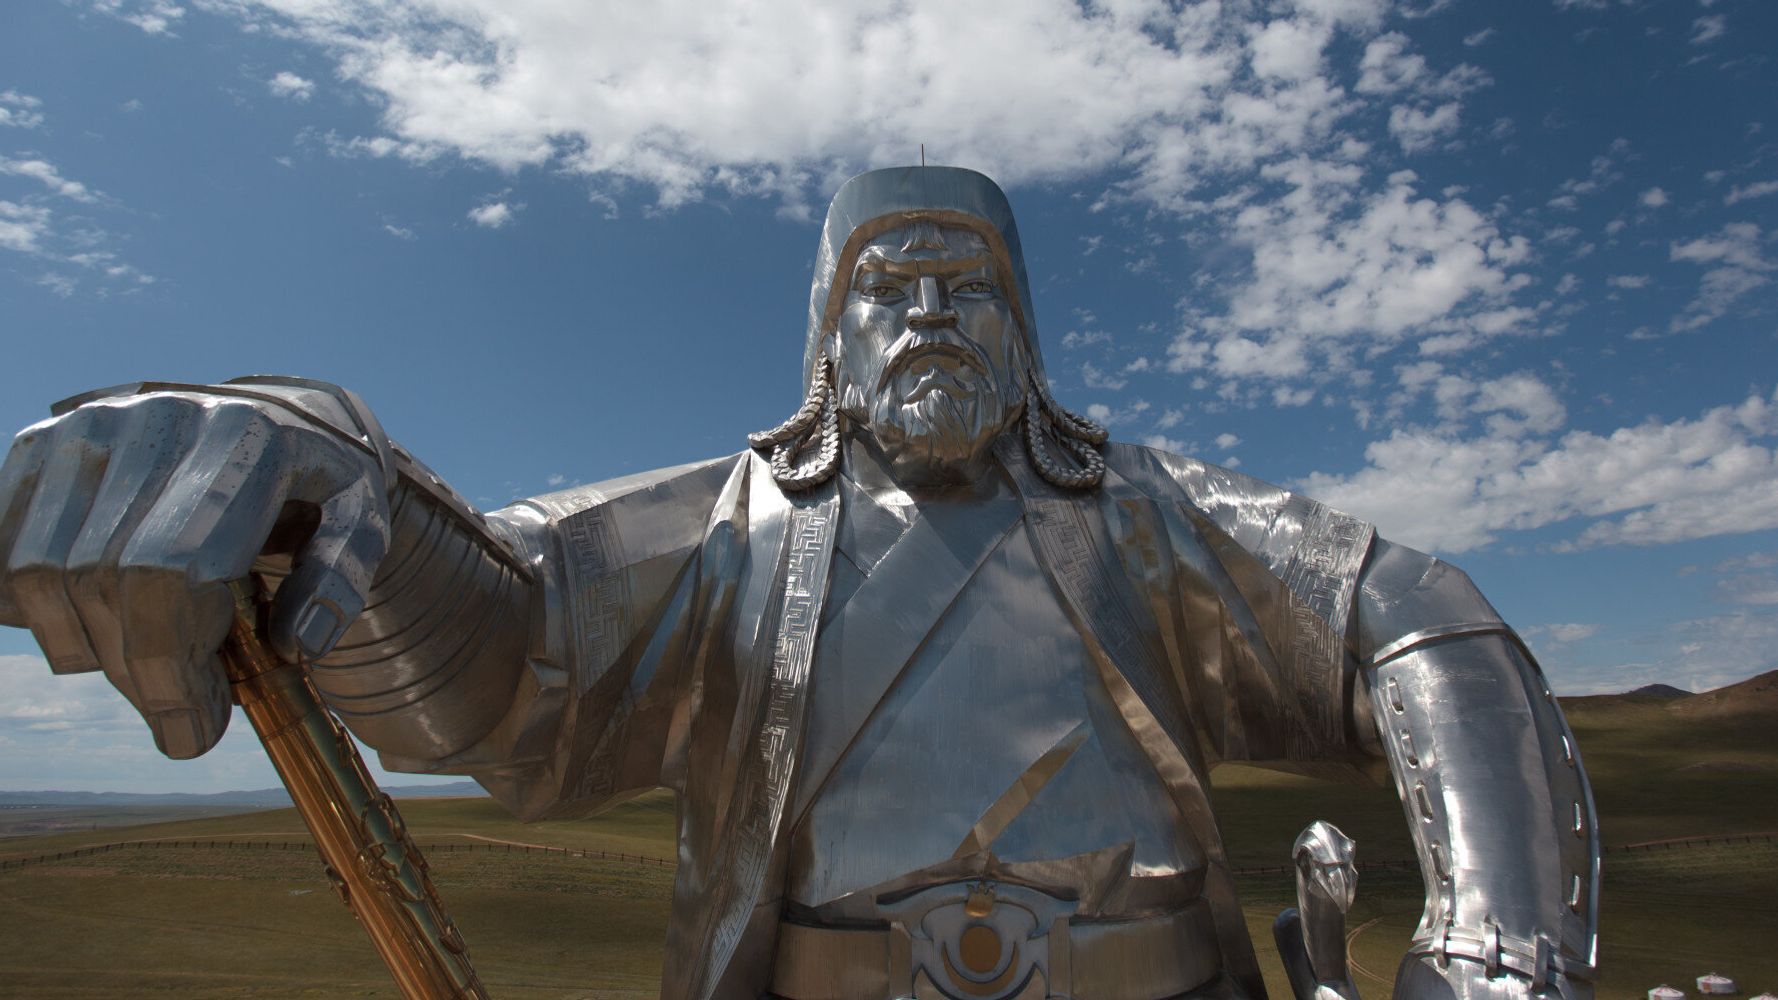 Πόσο πιθανό είναι να είστε απόγονος του Τζένγκις Χαν: Η γενετική κληρονομιά  του Μογγόλου κατακτητή | HuffPost Greece Ειδησεις